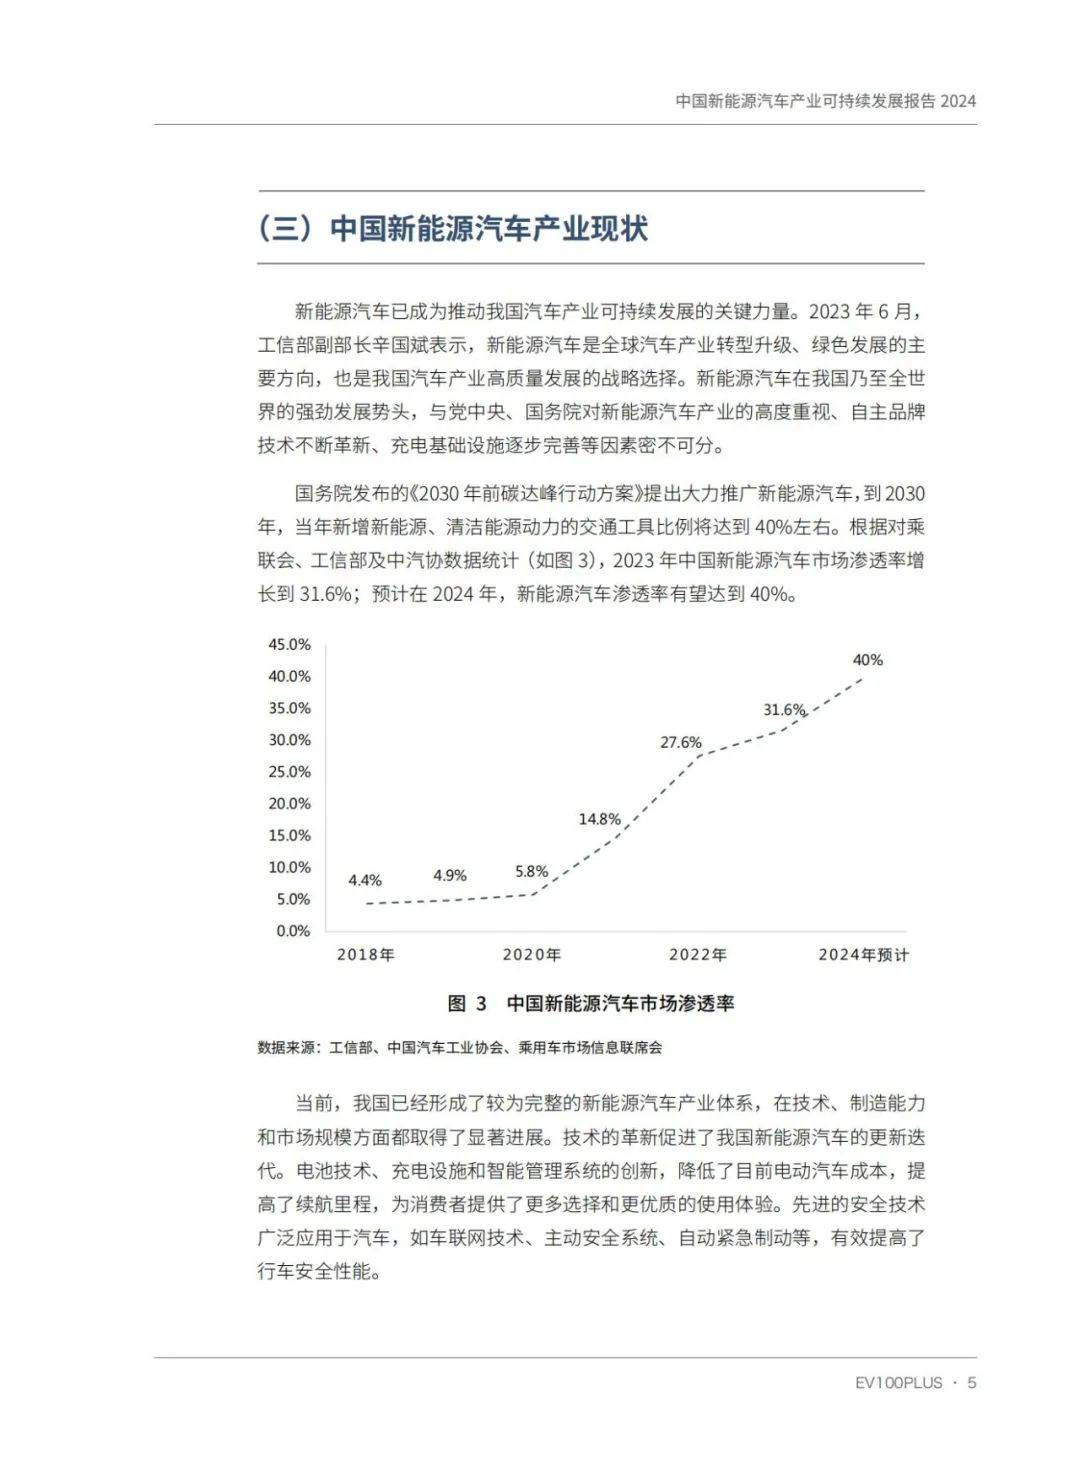 134页报告!中国新能源汽车产业可持续发展报告2024